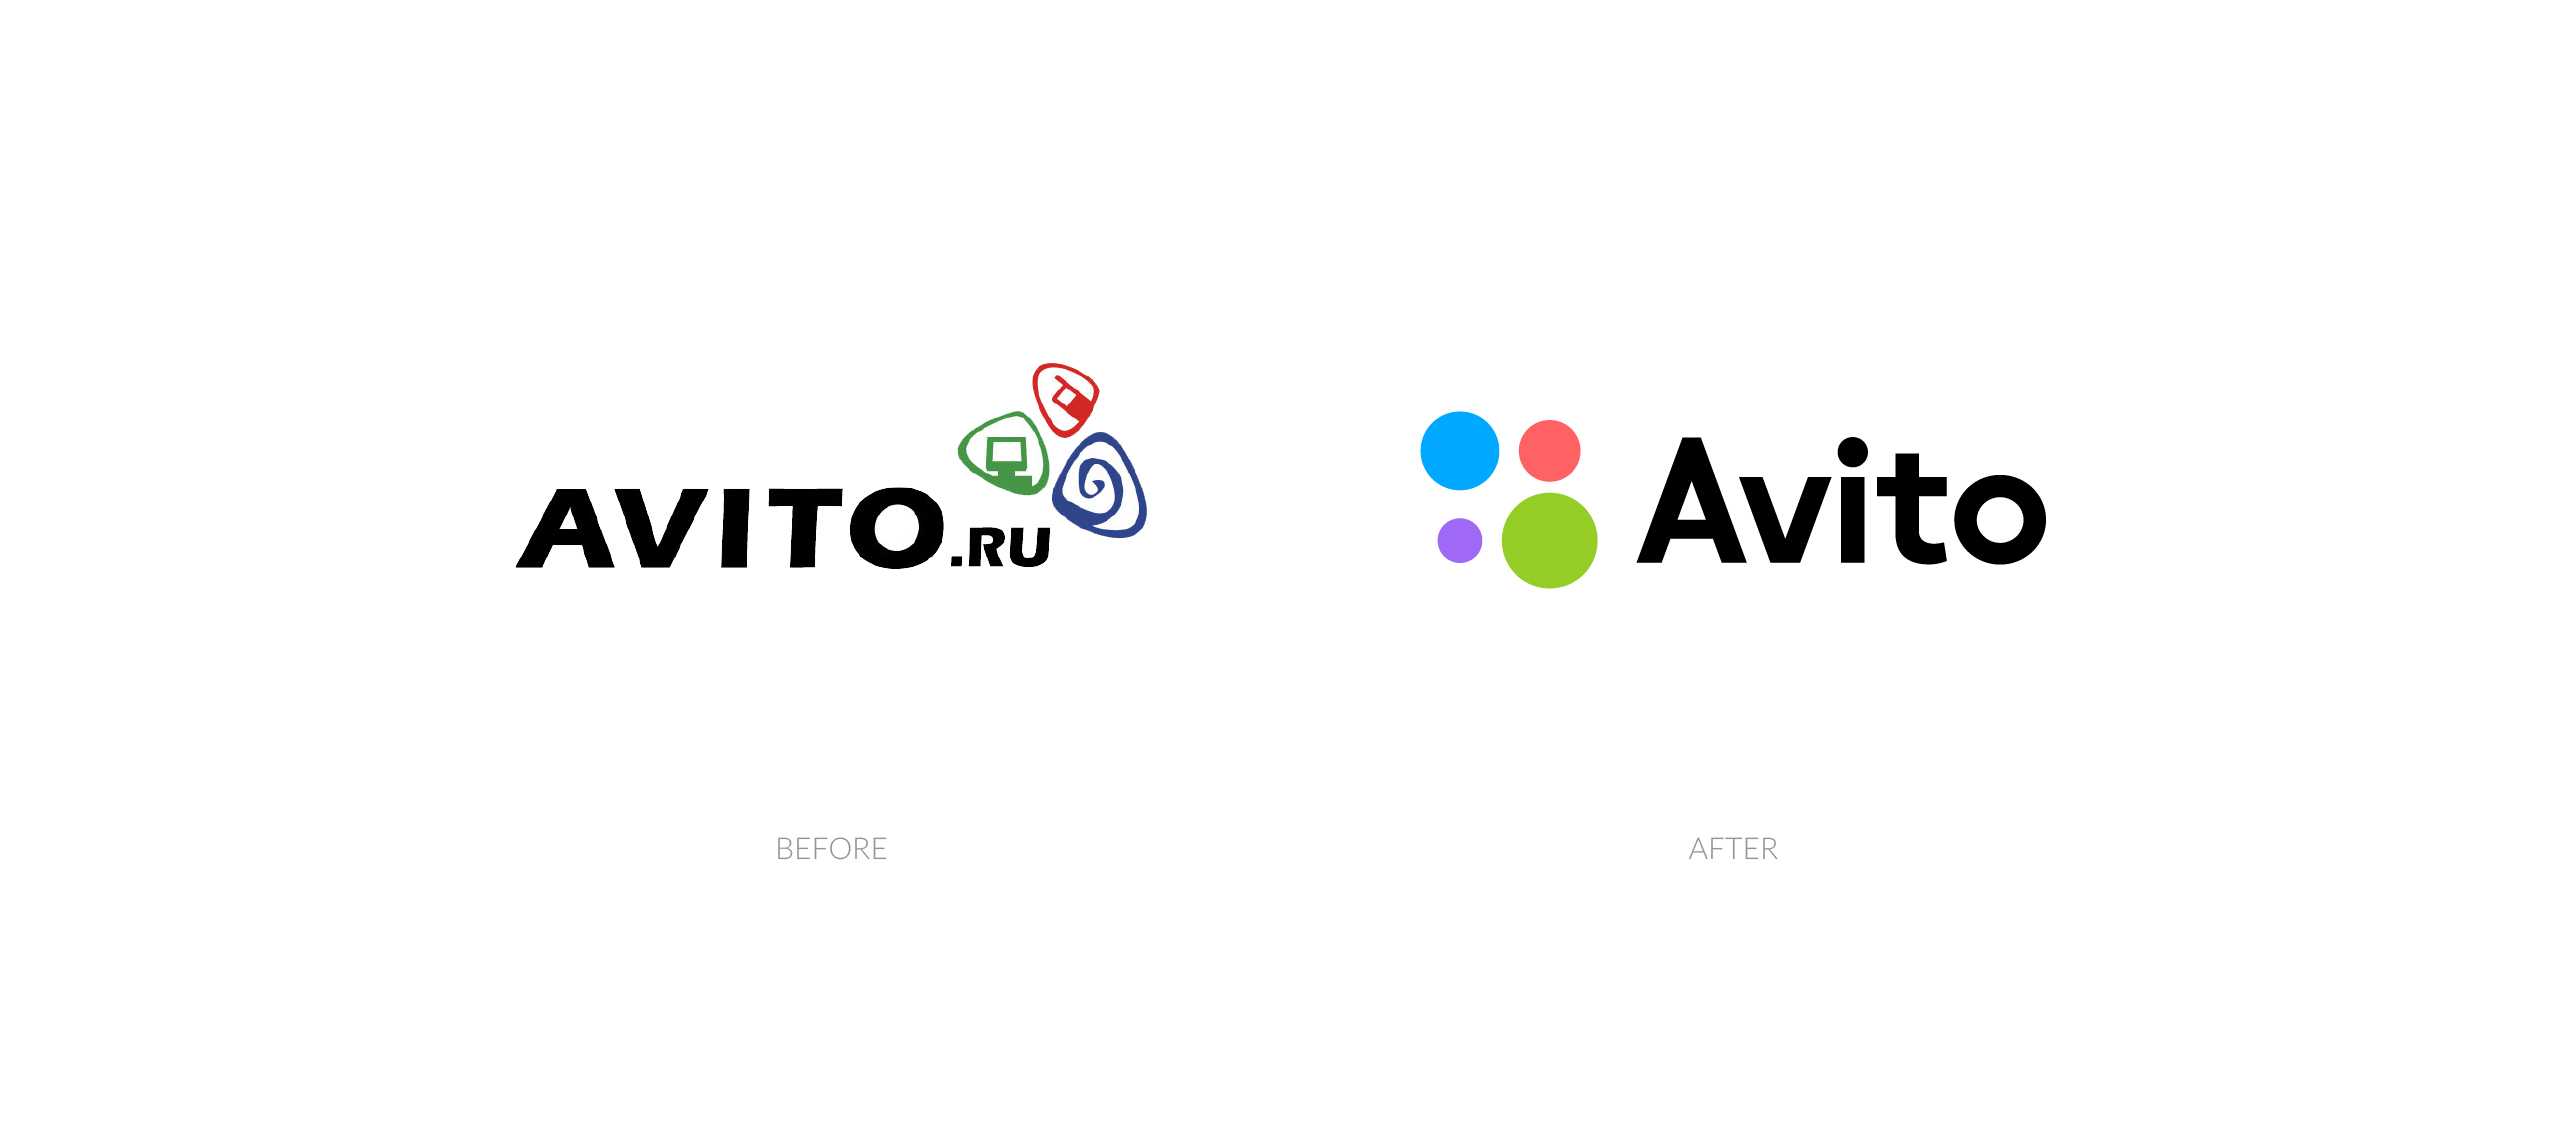 Авито ис. Авито. Avito лого. Авито старый логотип. Авито новый логотип.